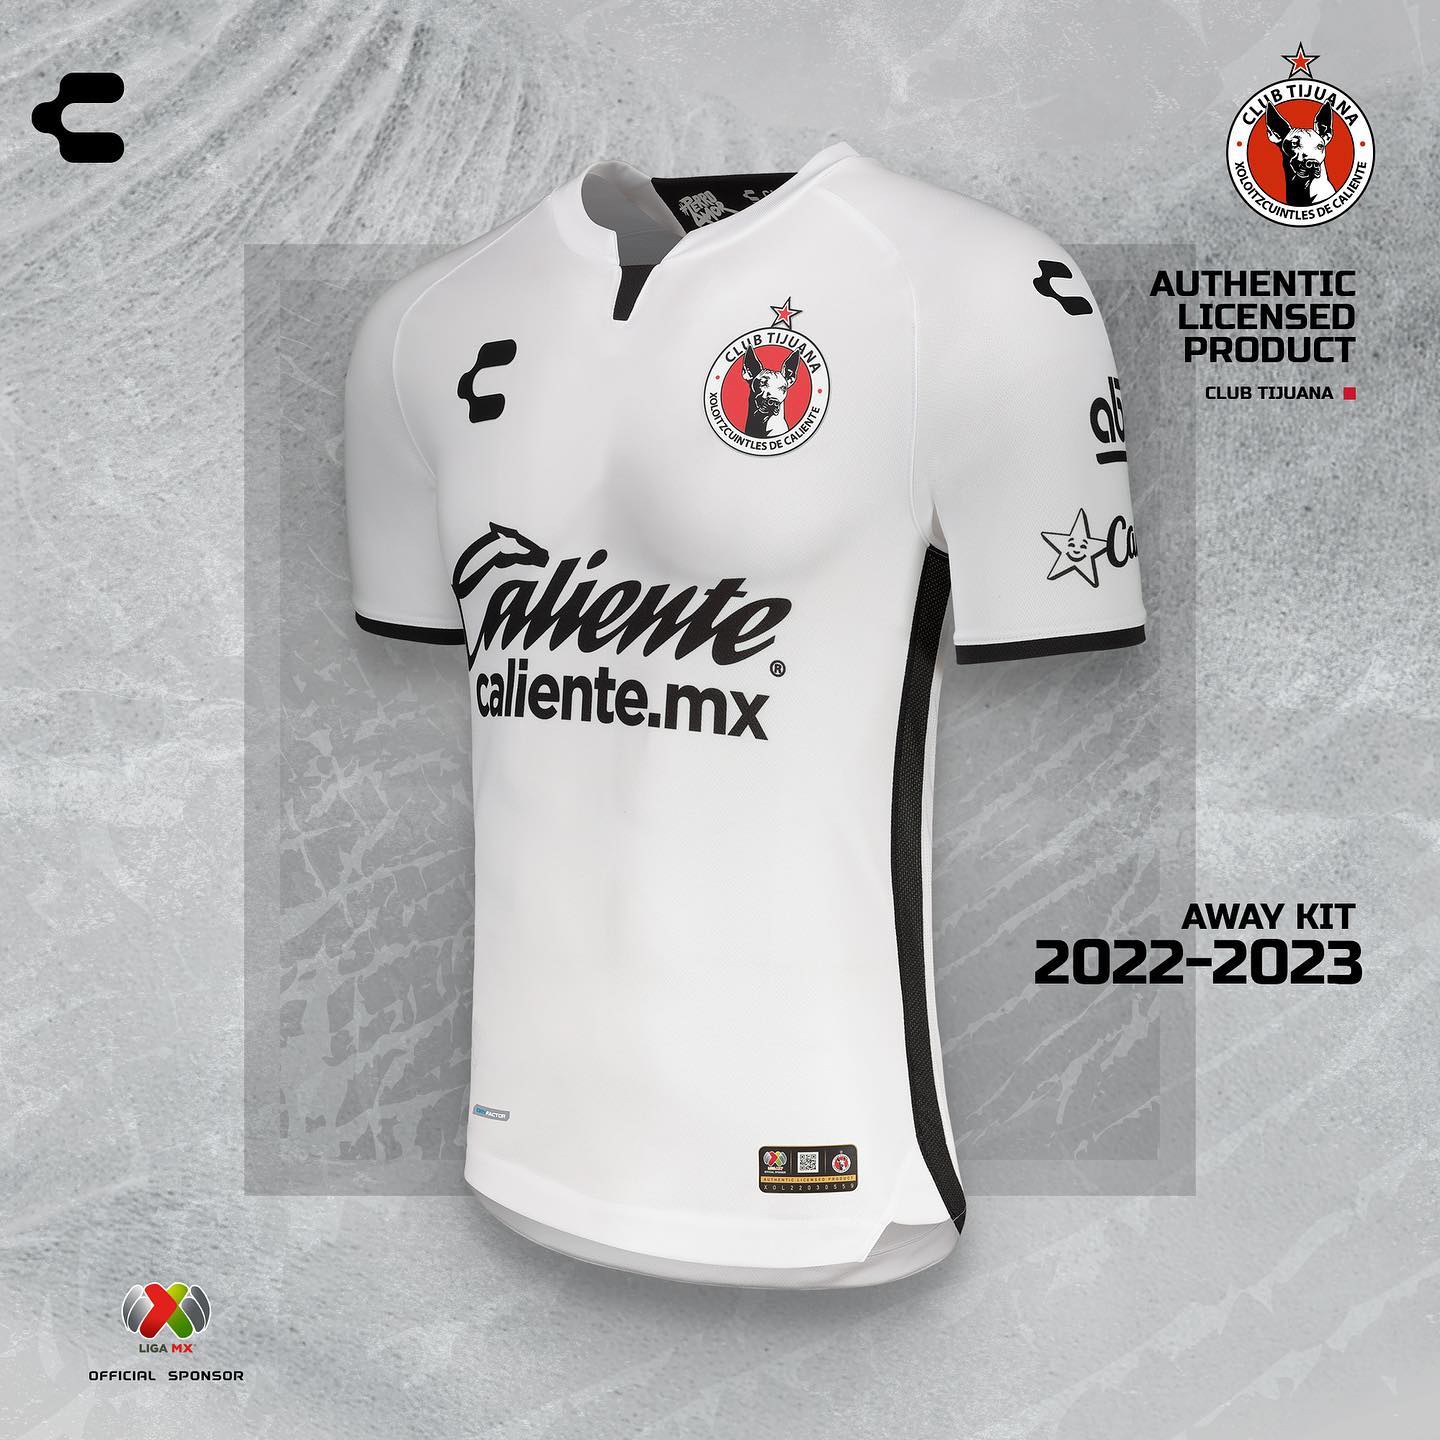 Camisas-do-Xolos-de-Tijuana-2022-2023-sao-reveladas-pela-Charly-3.jpg